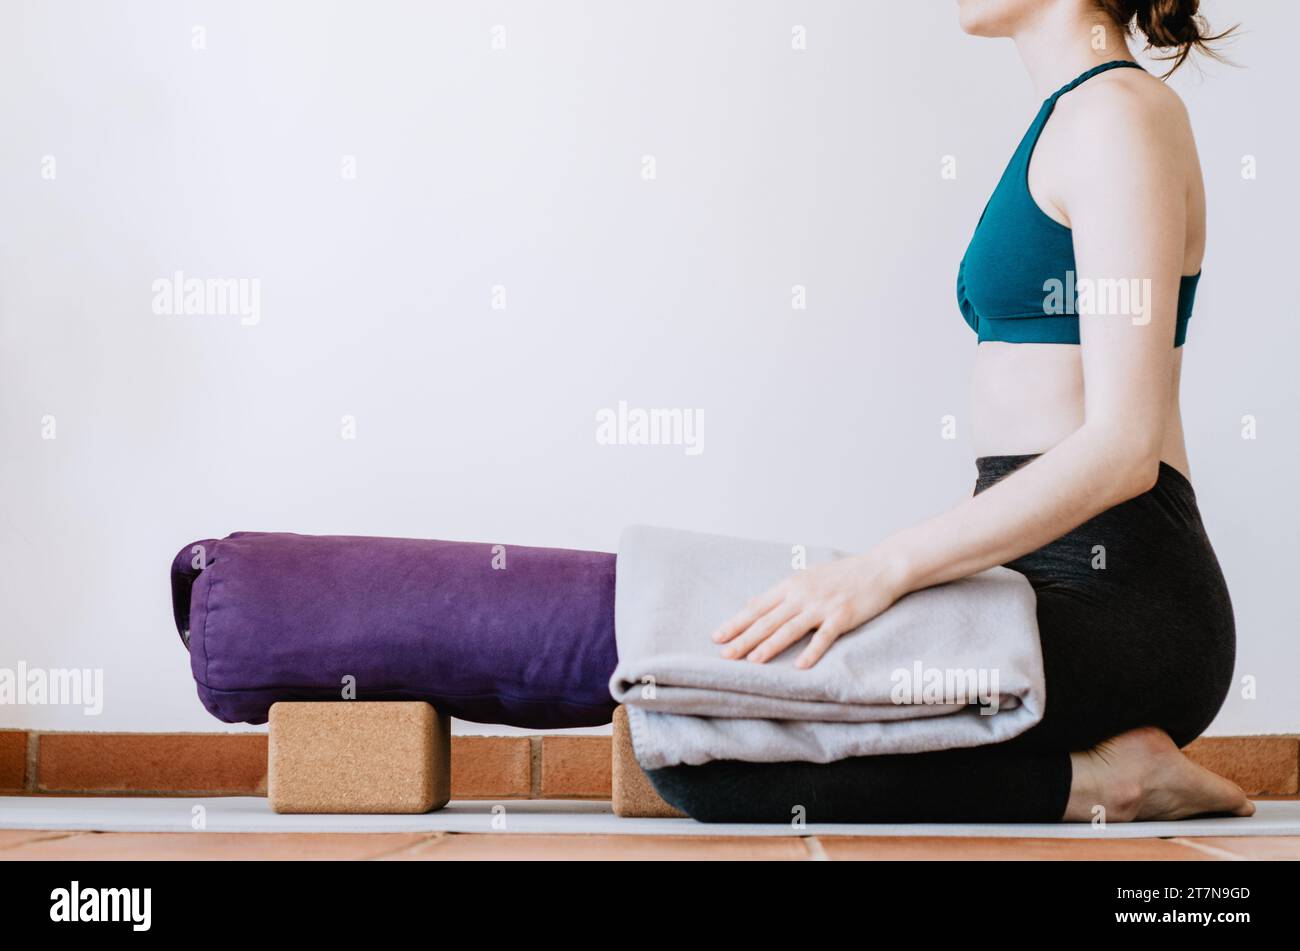 Frau, die sich auf eine restaurierende Yoga-Kinderhaltung mit Requisiten vorbereitet Stockfoto